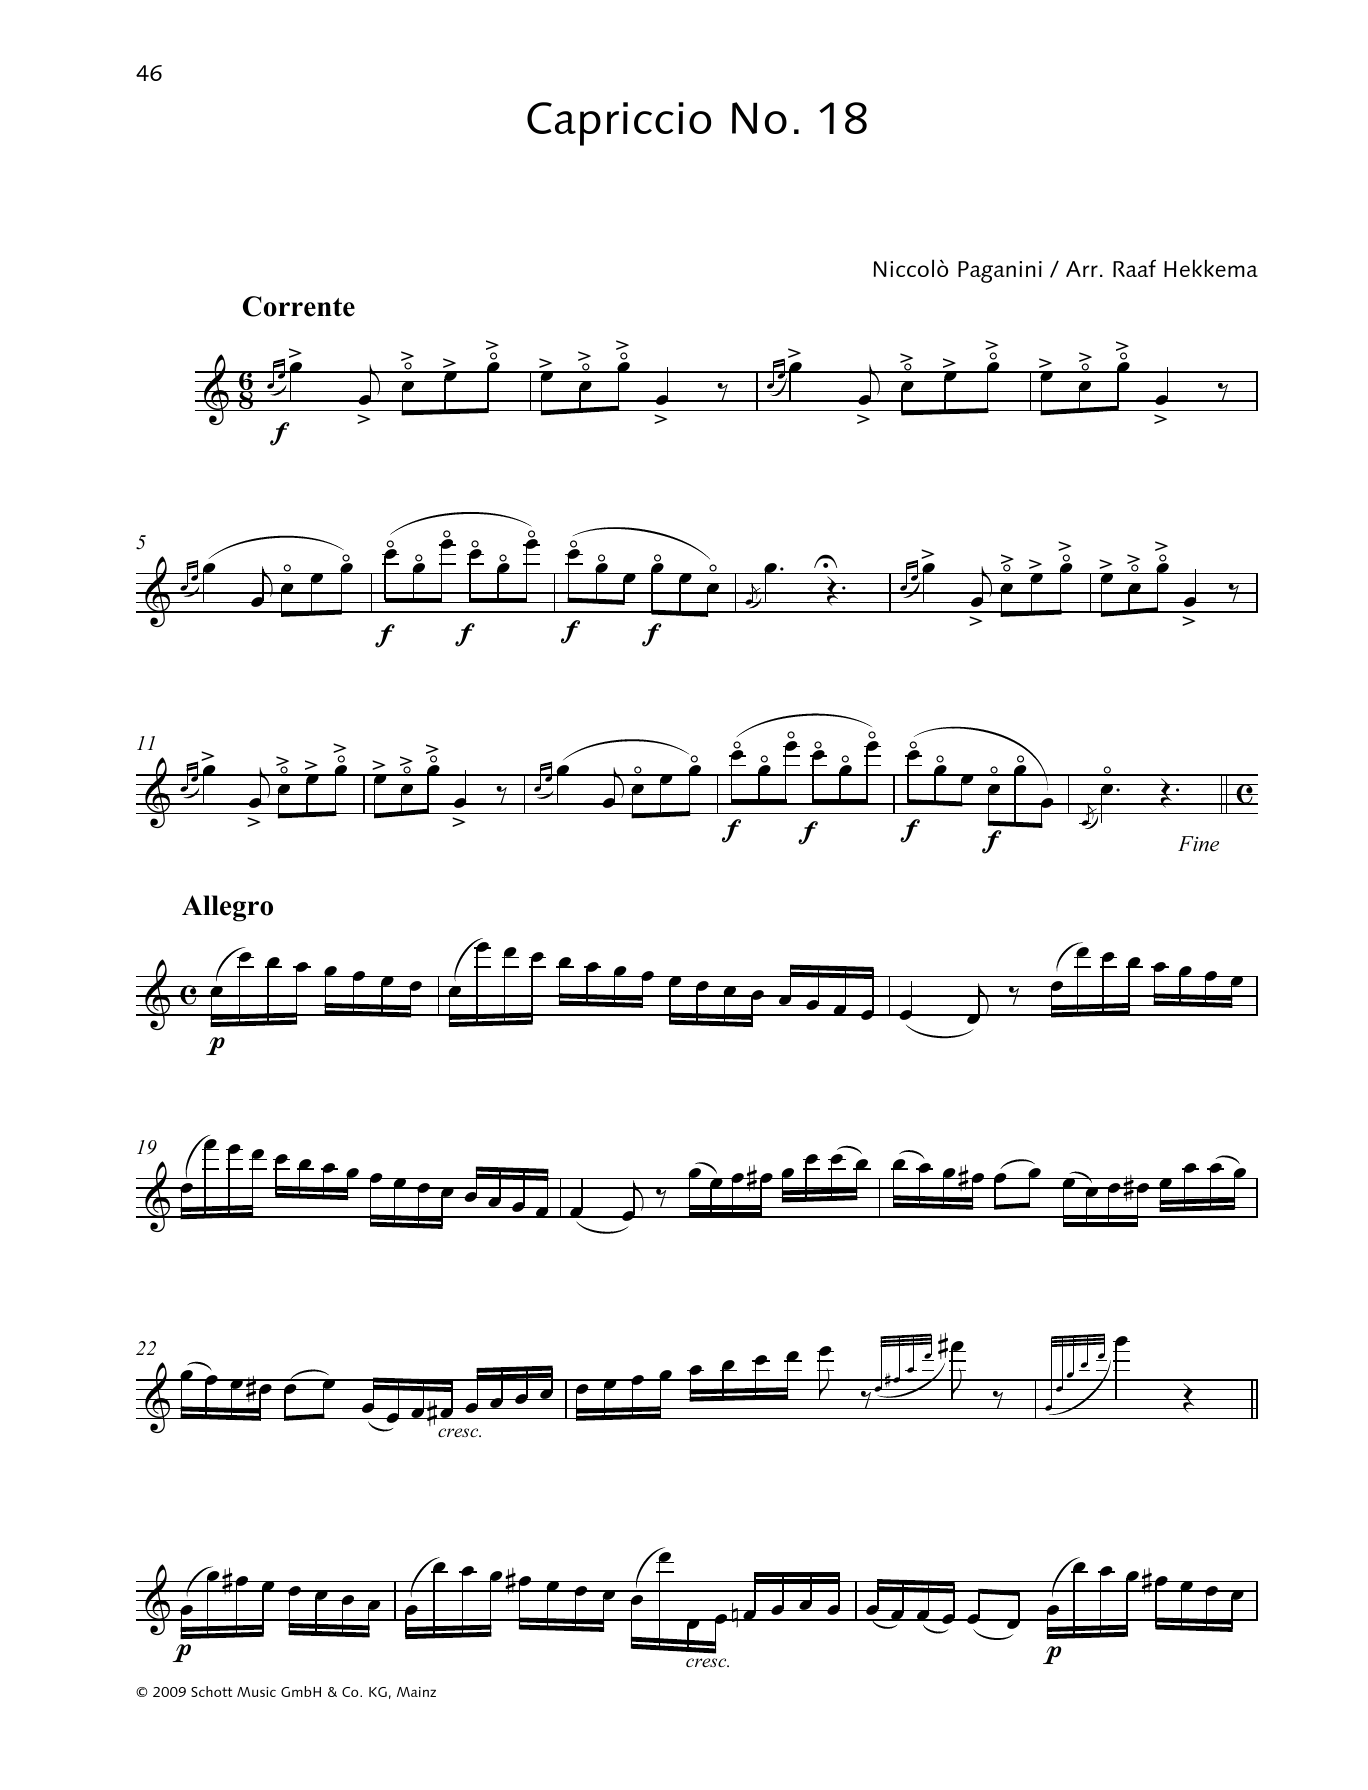 Download Niccolo Paganini Capriccio No. 18 Sheet Music